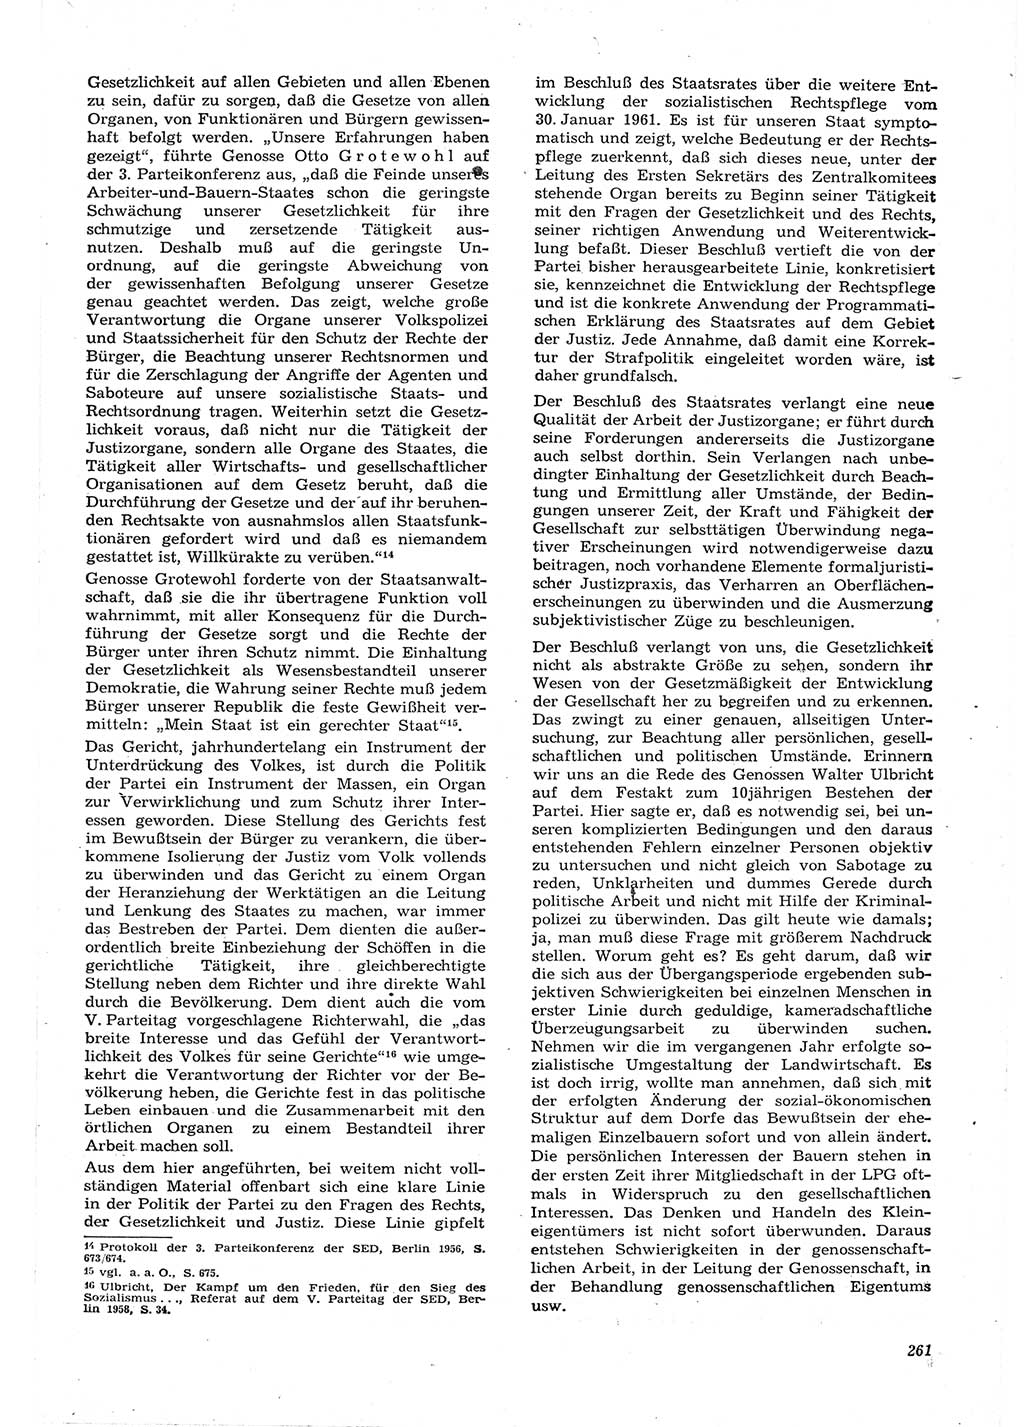 Neue Justiz (NJ), Zeitschrift für Recht und Rechtswissenschaft [Deutsche Demokratische Republik (DDR)], 15. Jahrgang 1961, Seite 261 (NJ DDR 1961, S. 261)